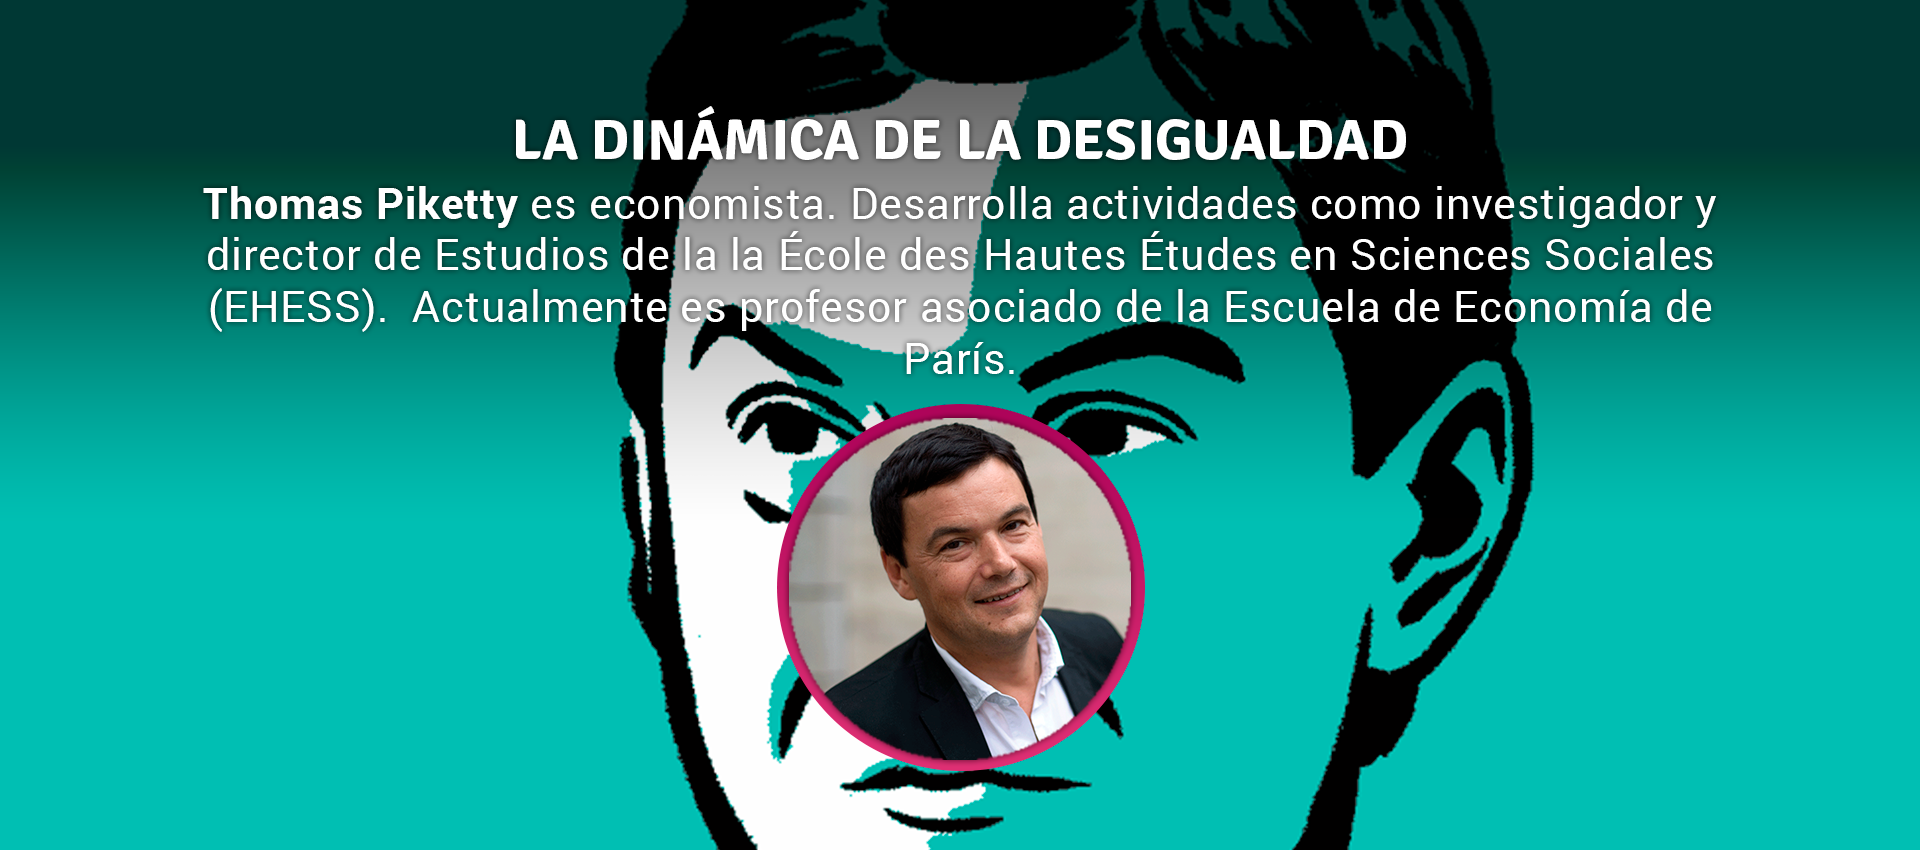 Thomas Piketty LA DINÁMICA DE LA DESIGUALDAD